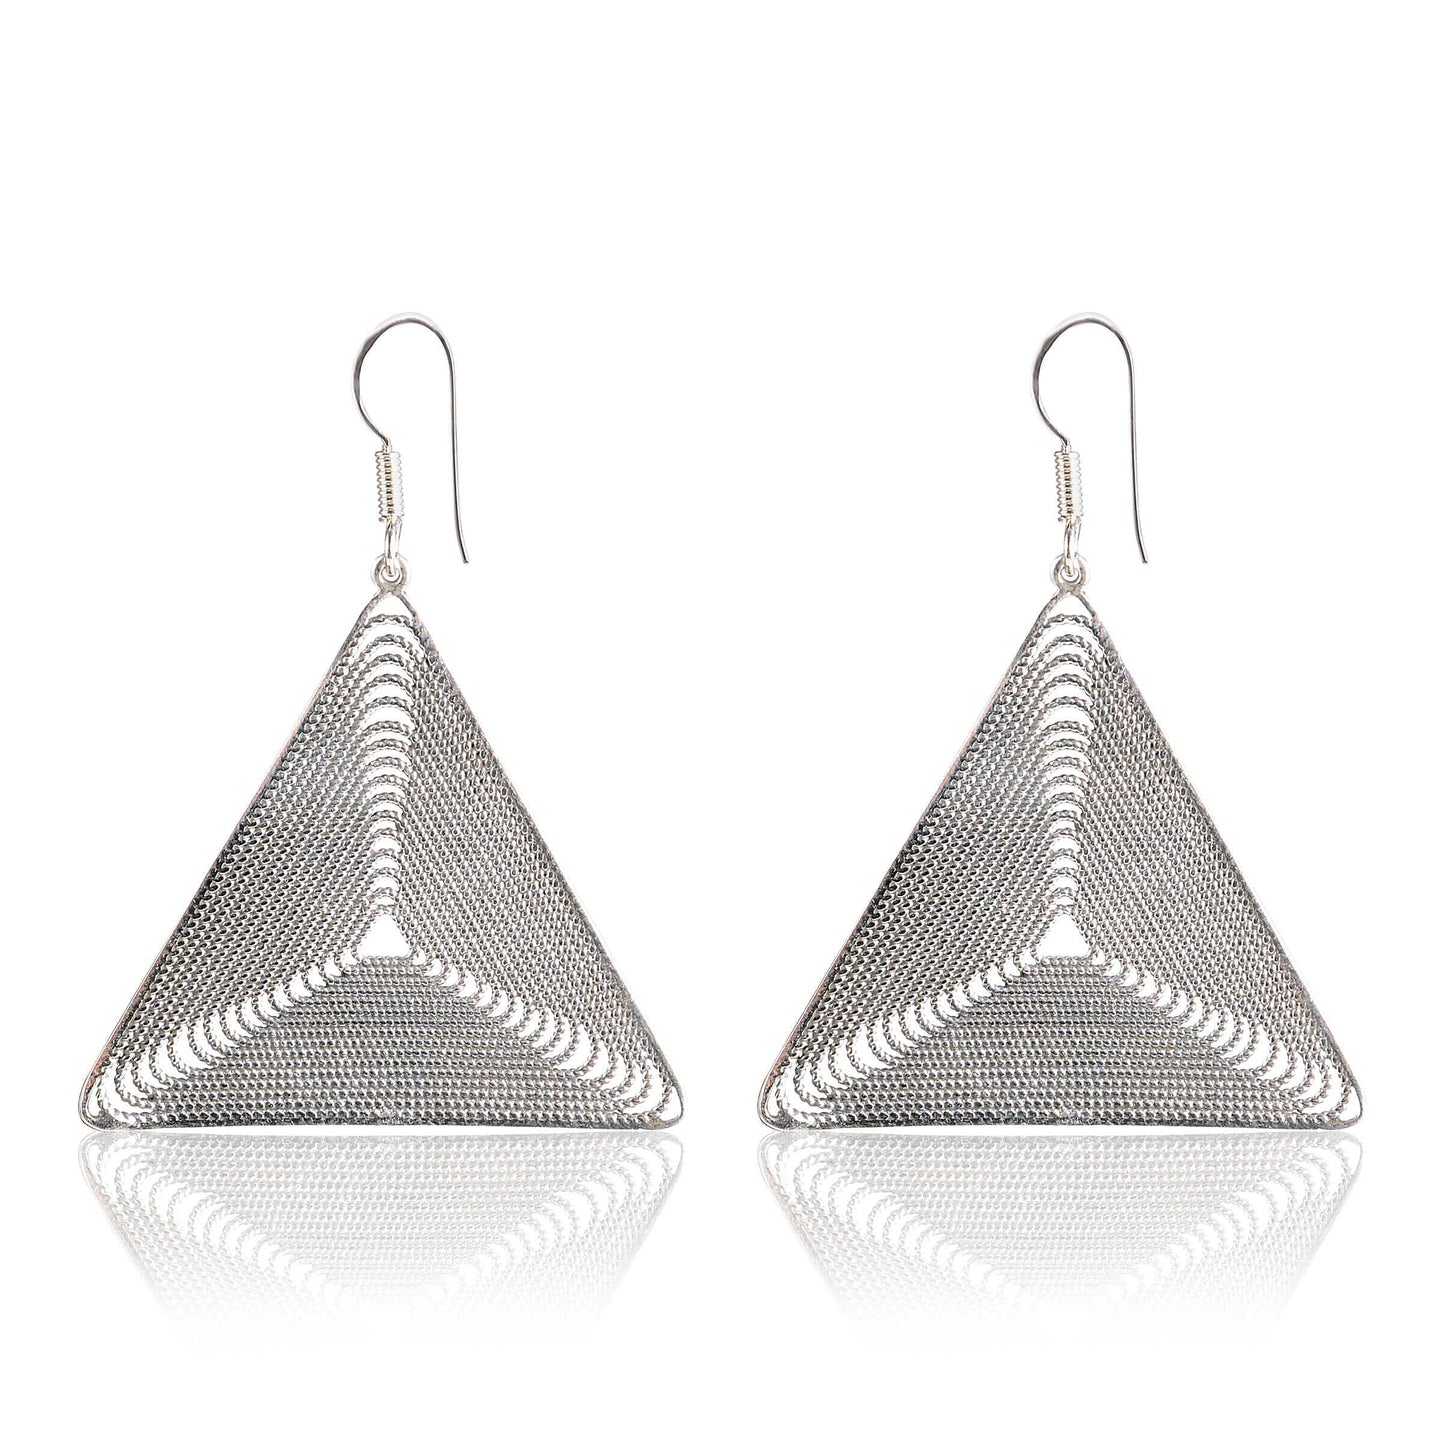 Tribal Earrings Silver Triangle Earrings